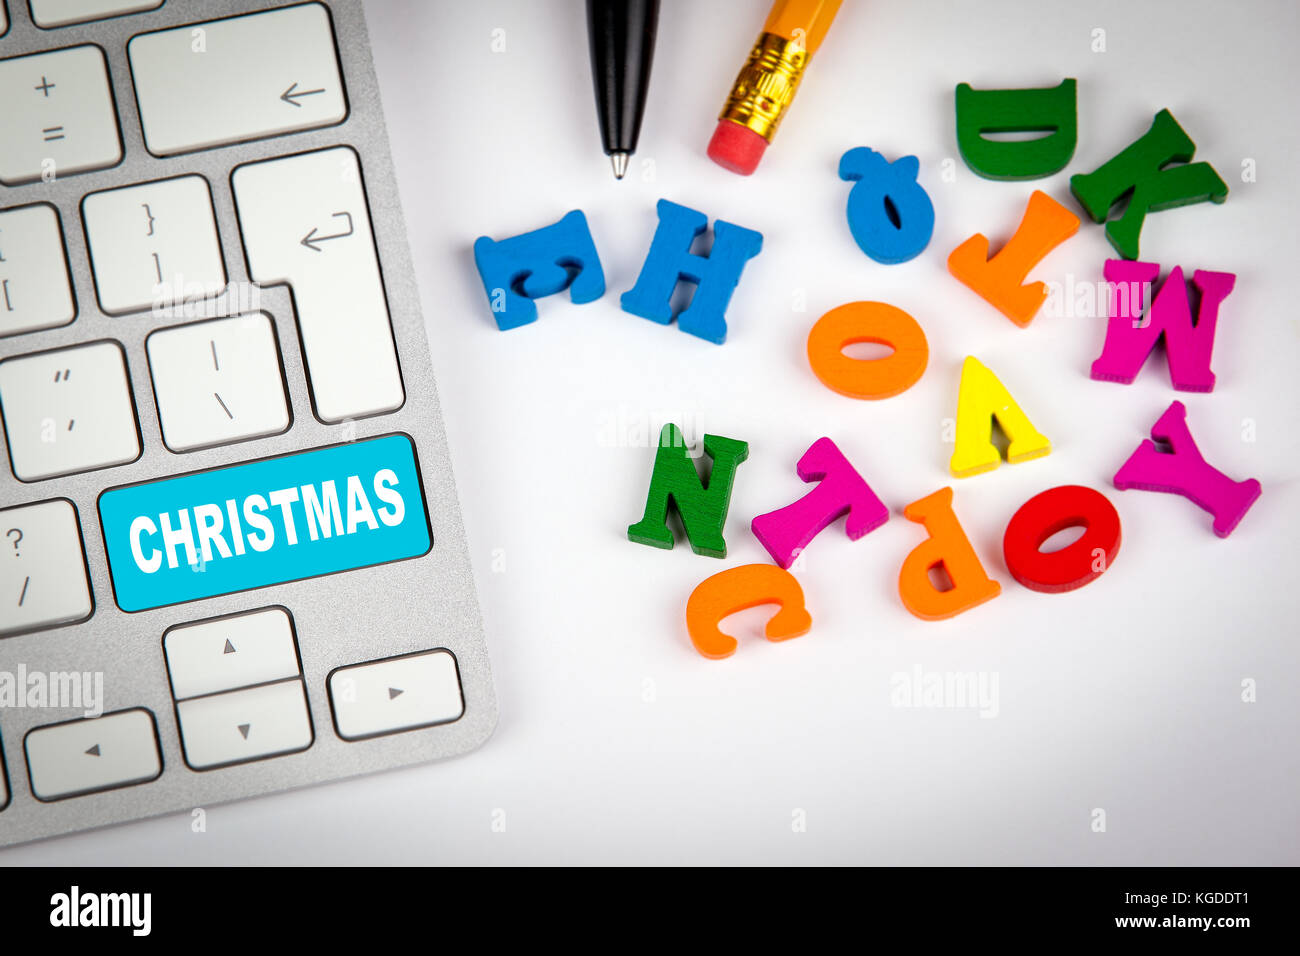 Computer Tastatur Mit Wort Weihnachten Holiday Shopping Und Entertainment Hintergrund Stockfotografie Alamy